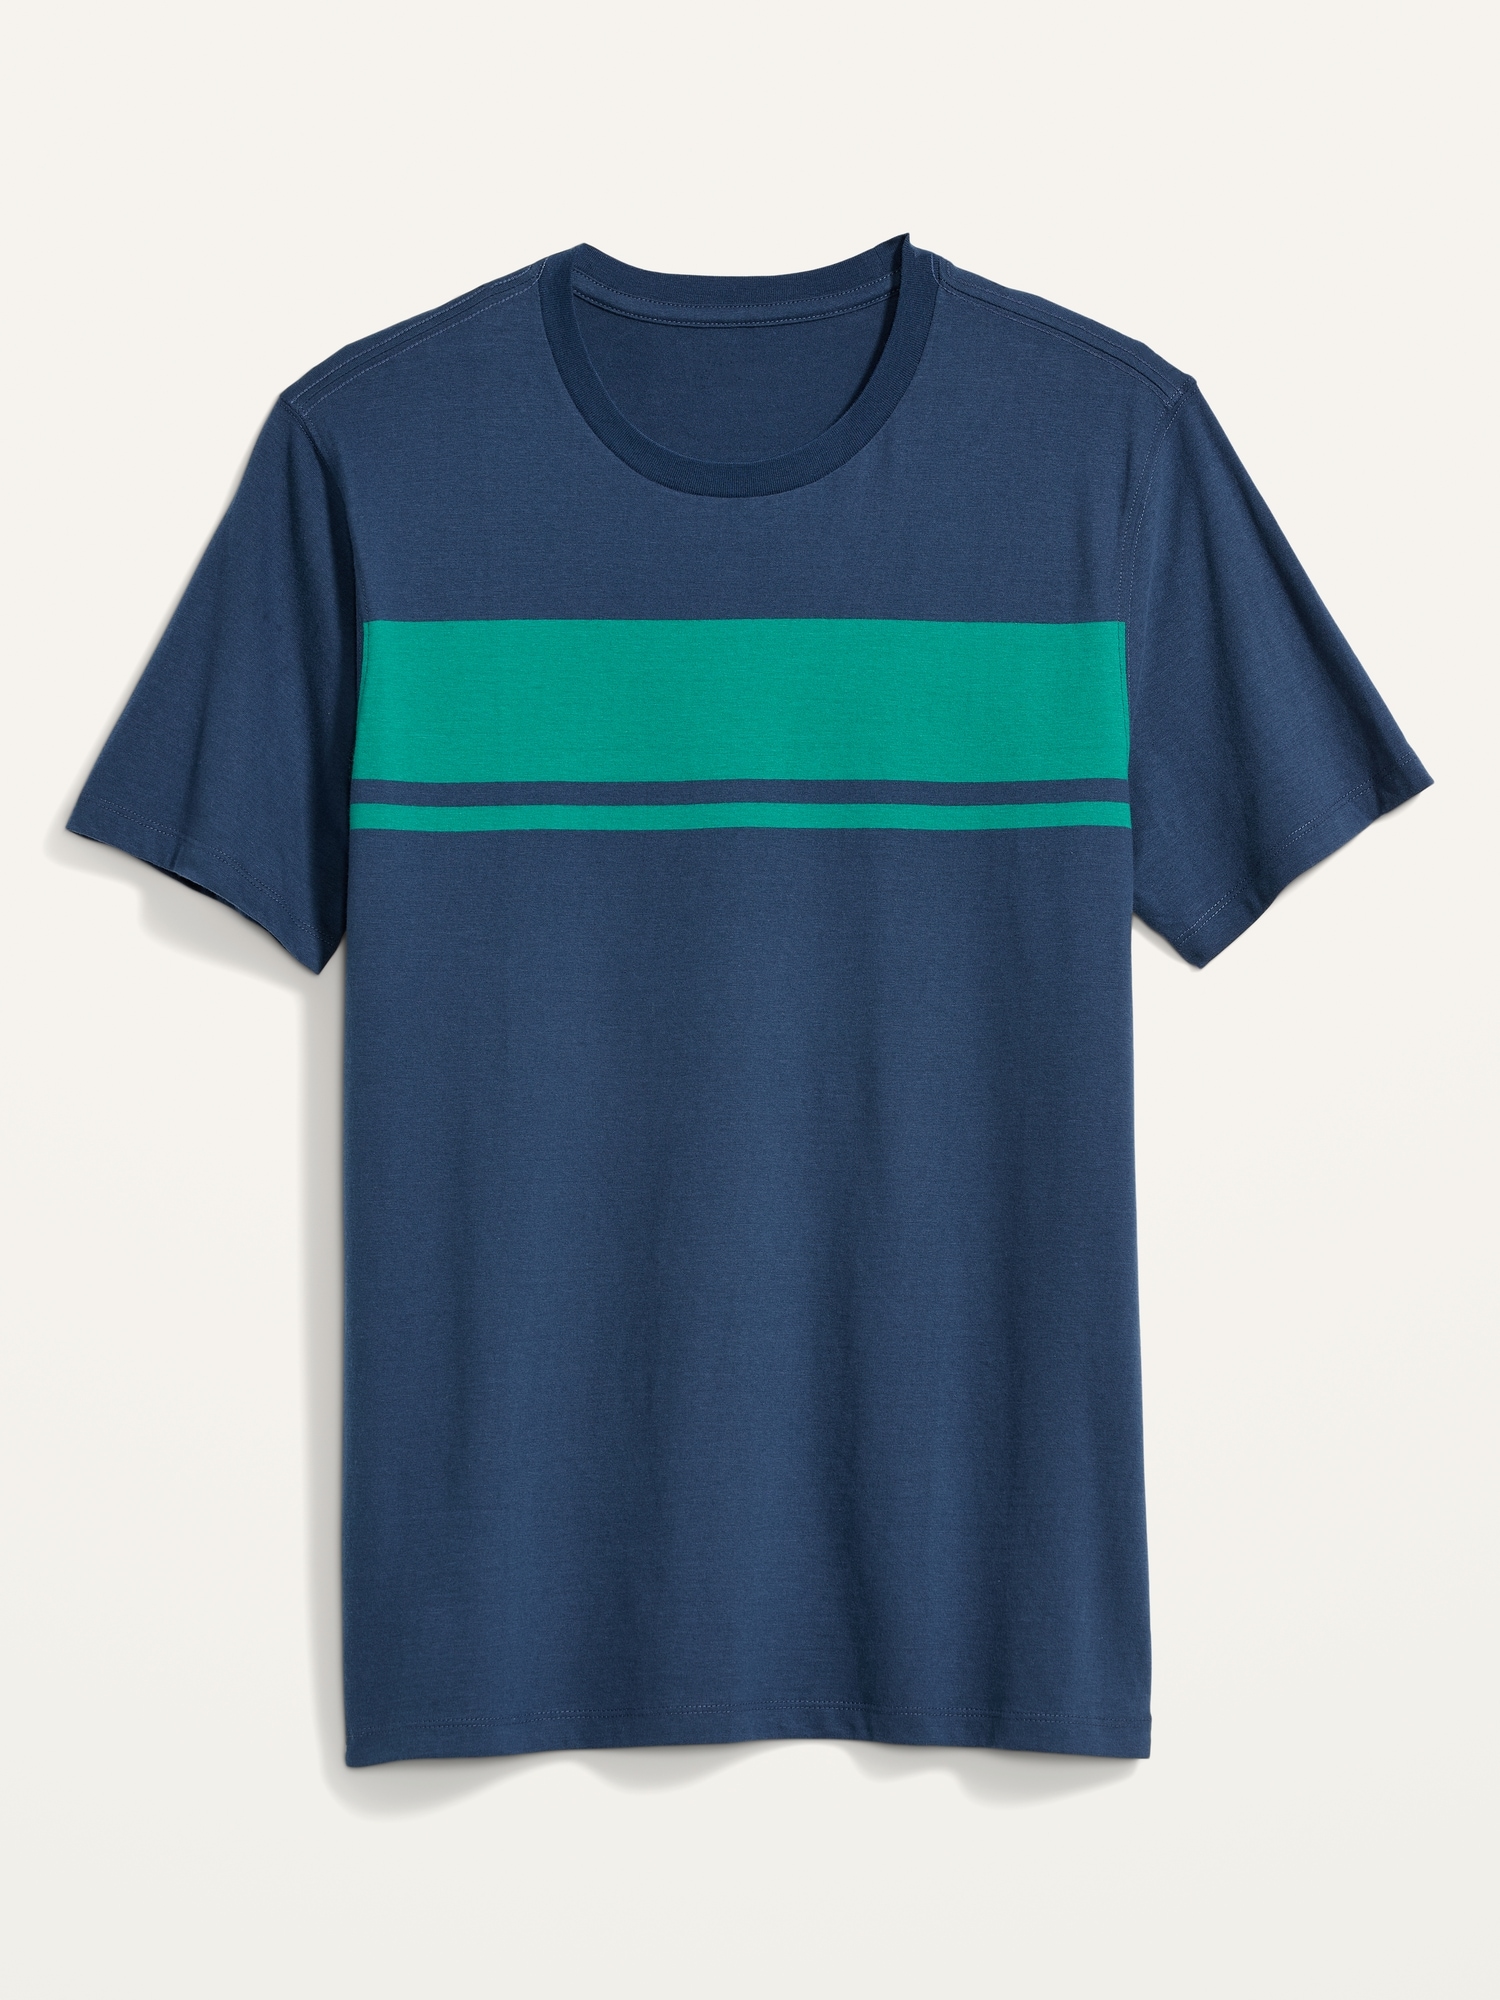 Old Navy Soft-Washed Center-Stripe T-Shirt for Men blue. 1